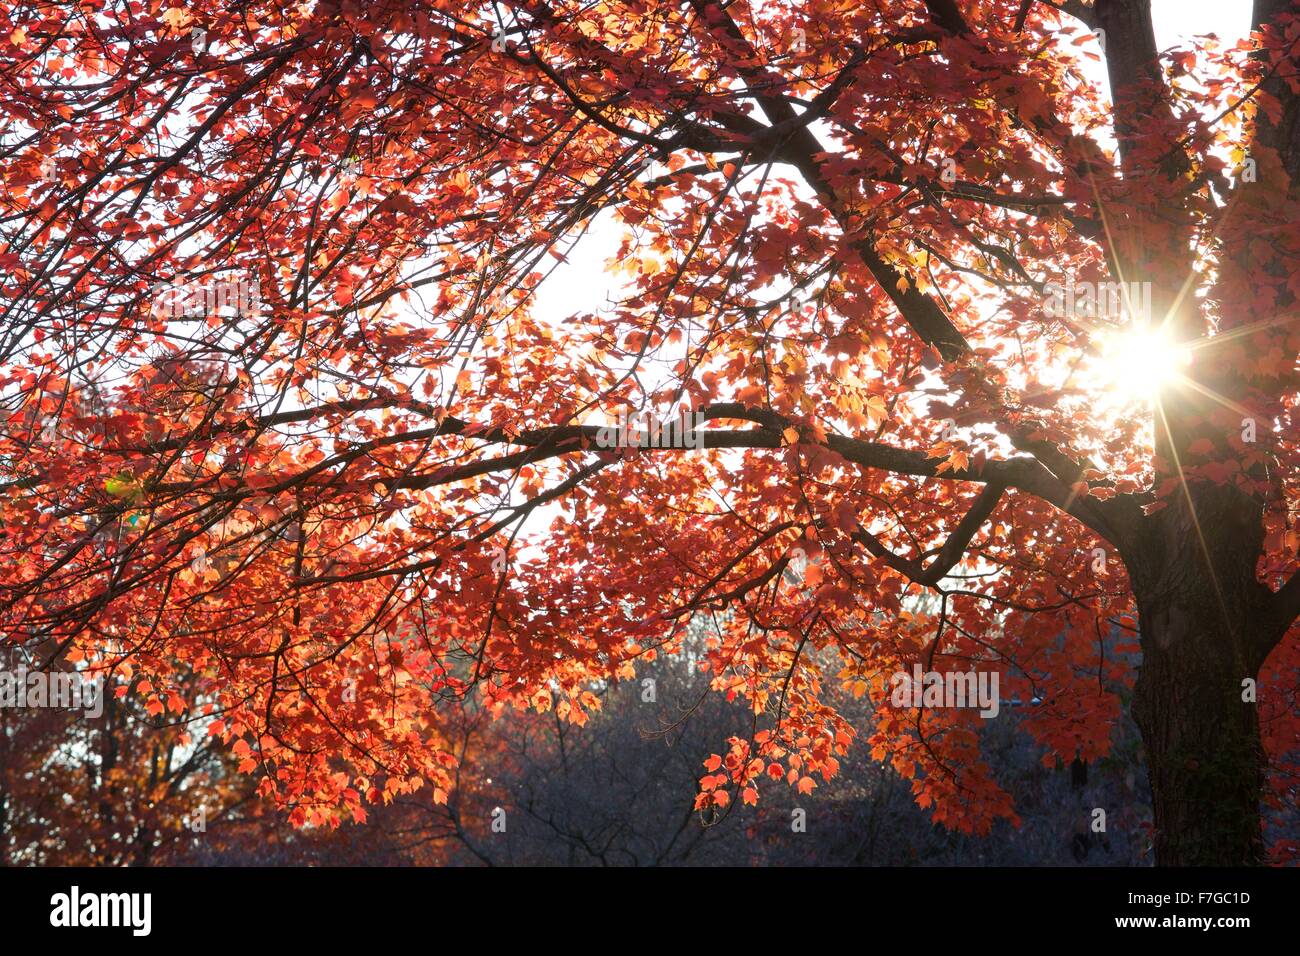 Autumn in the South End neighborhood of Boston, Massachusetts Stock Photo